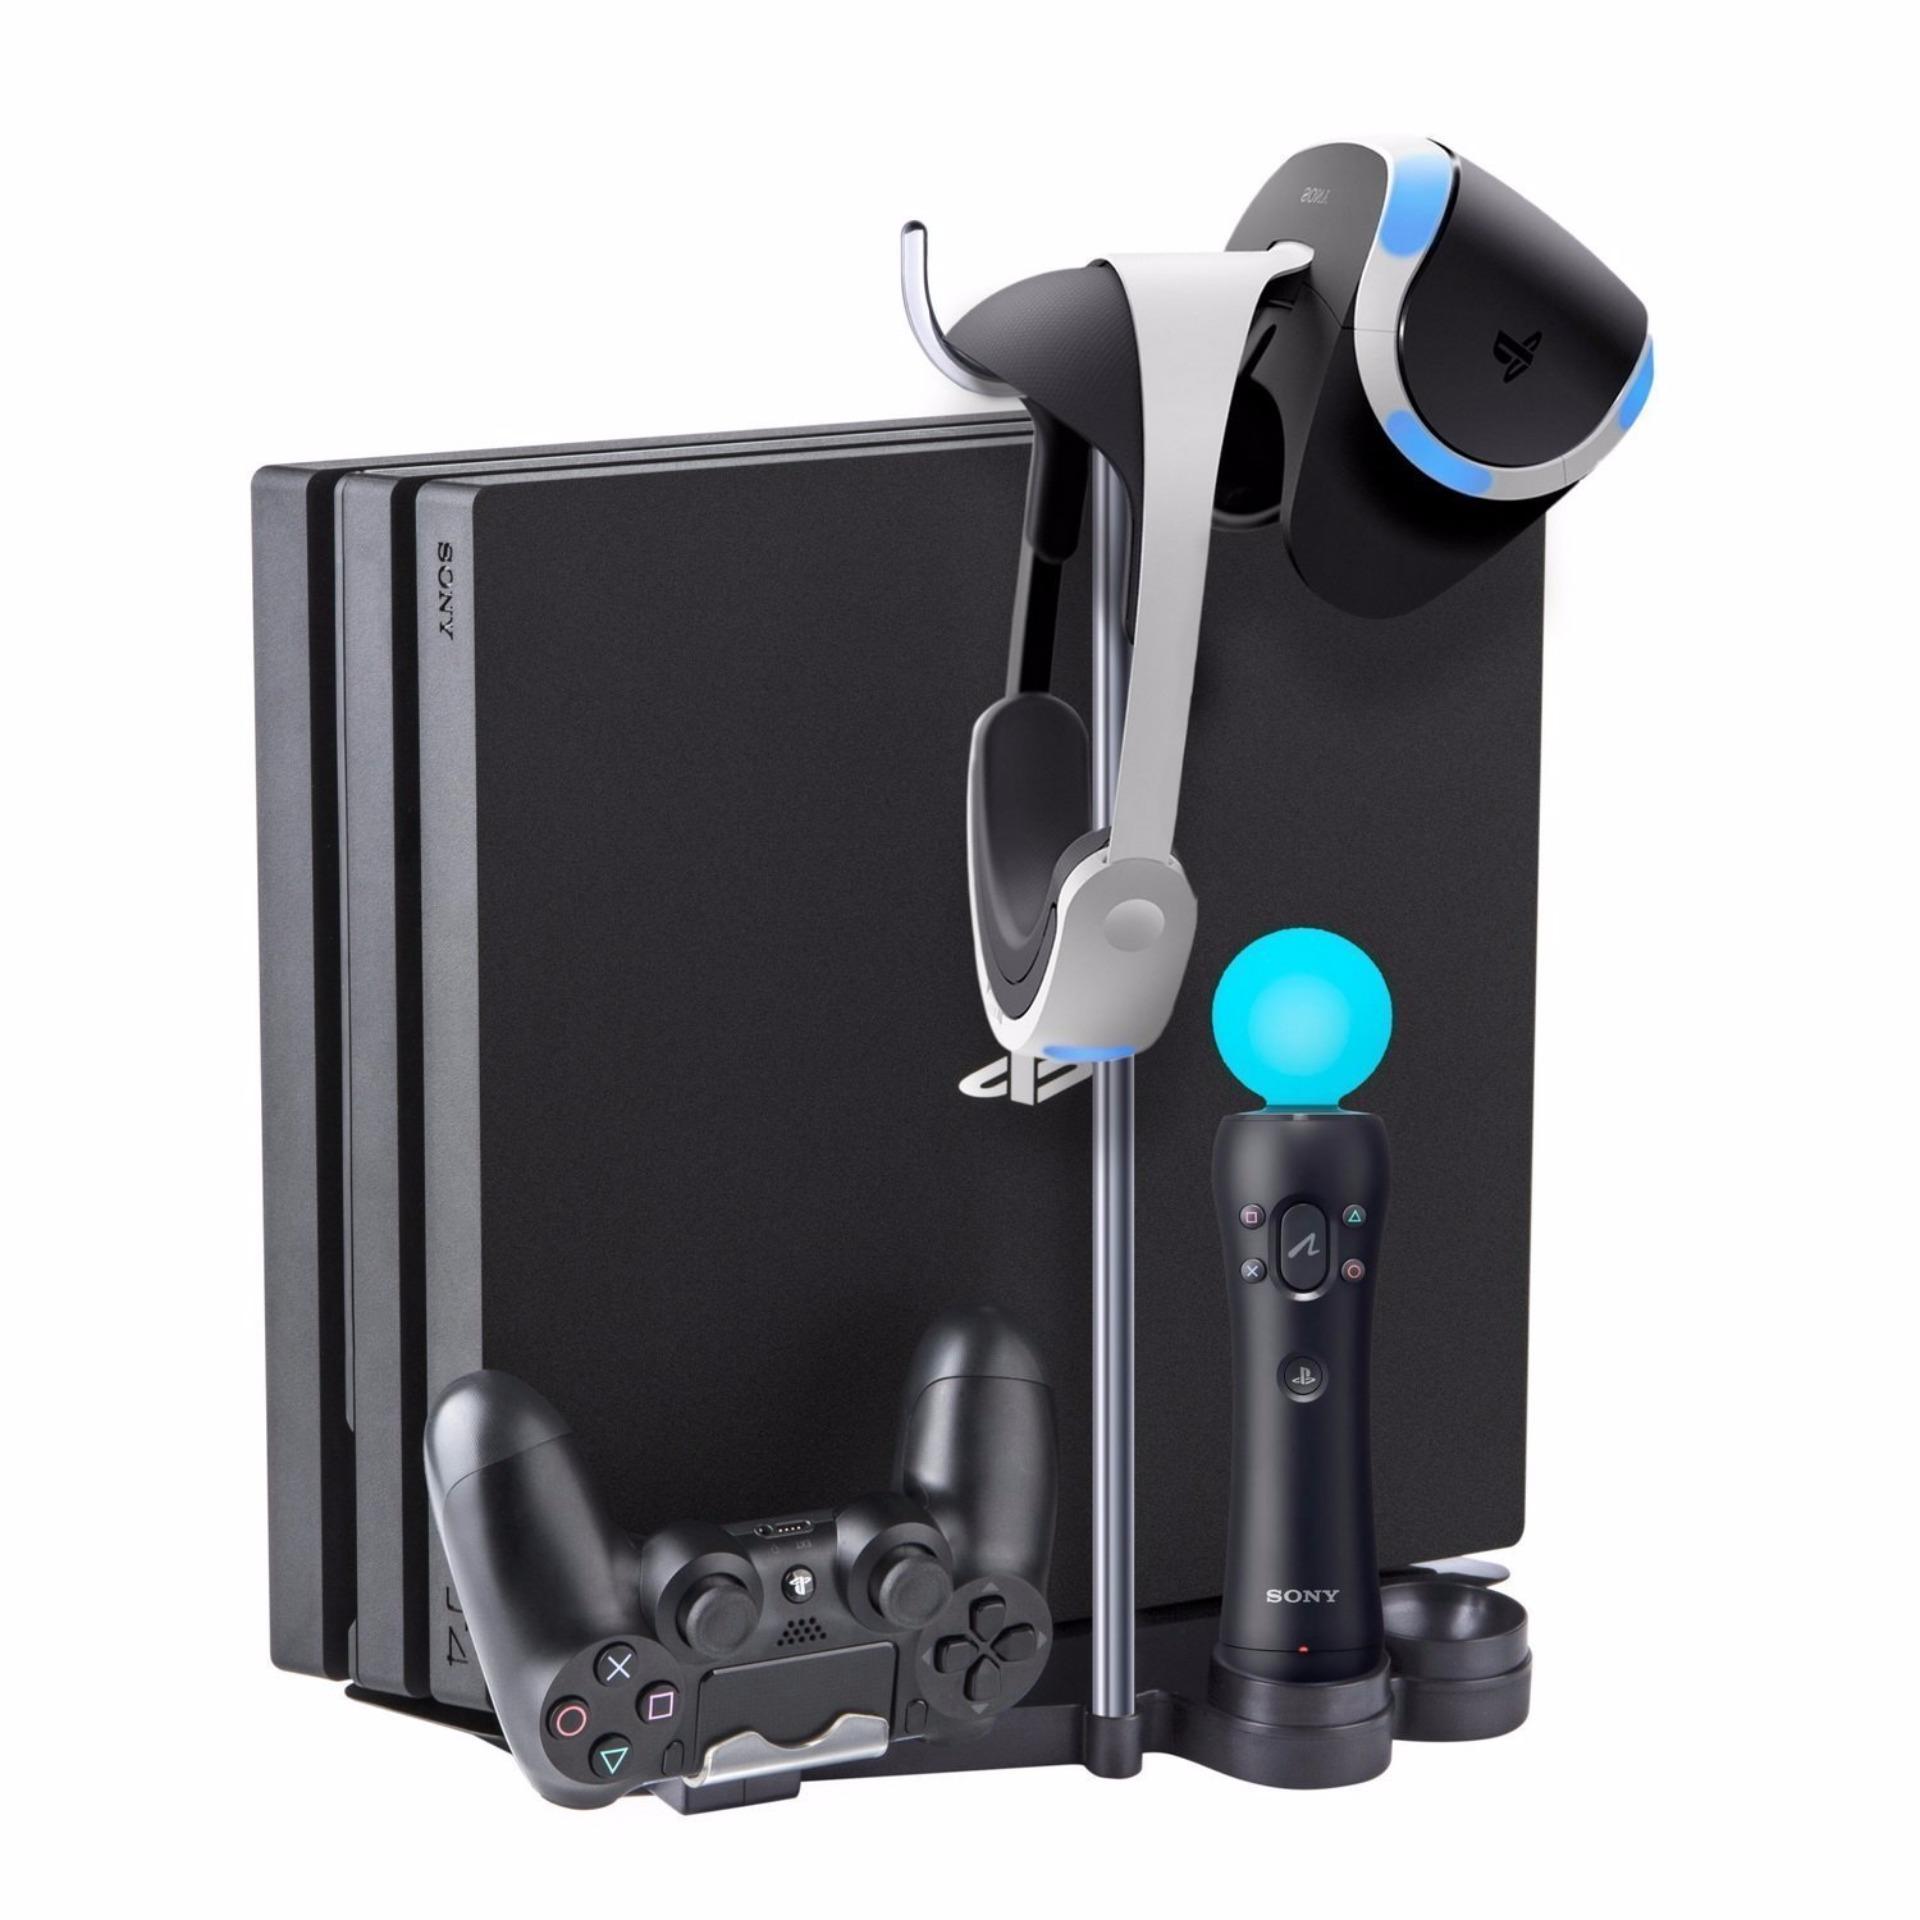 Chân đế + sạc tay DS4+Move + Giá đỡ VR cho PS4 Slim/Pro